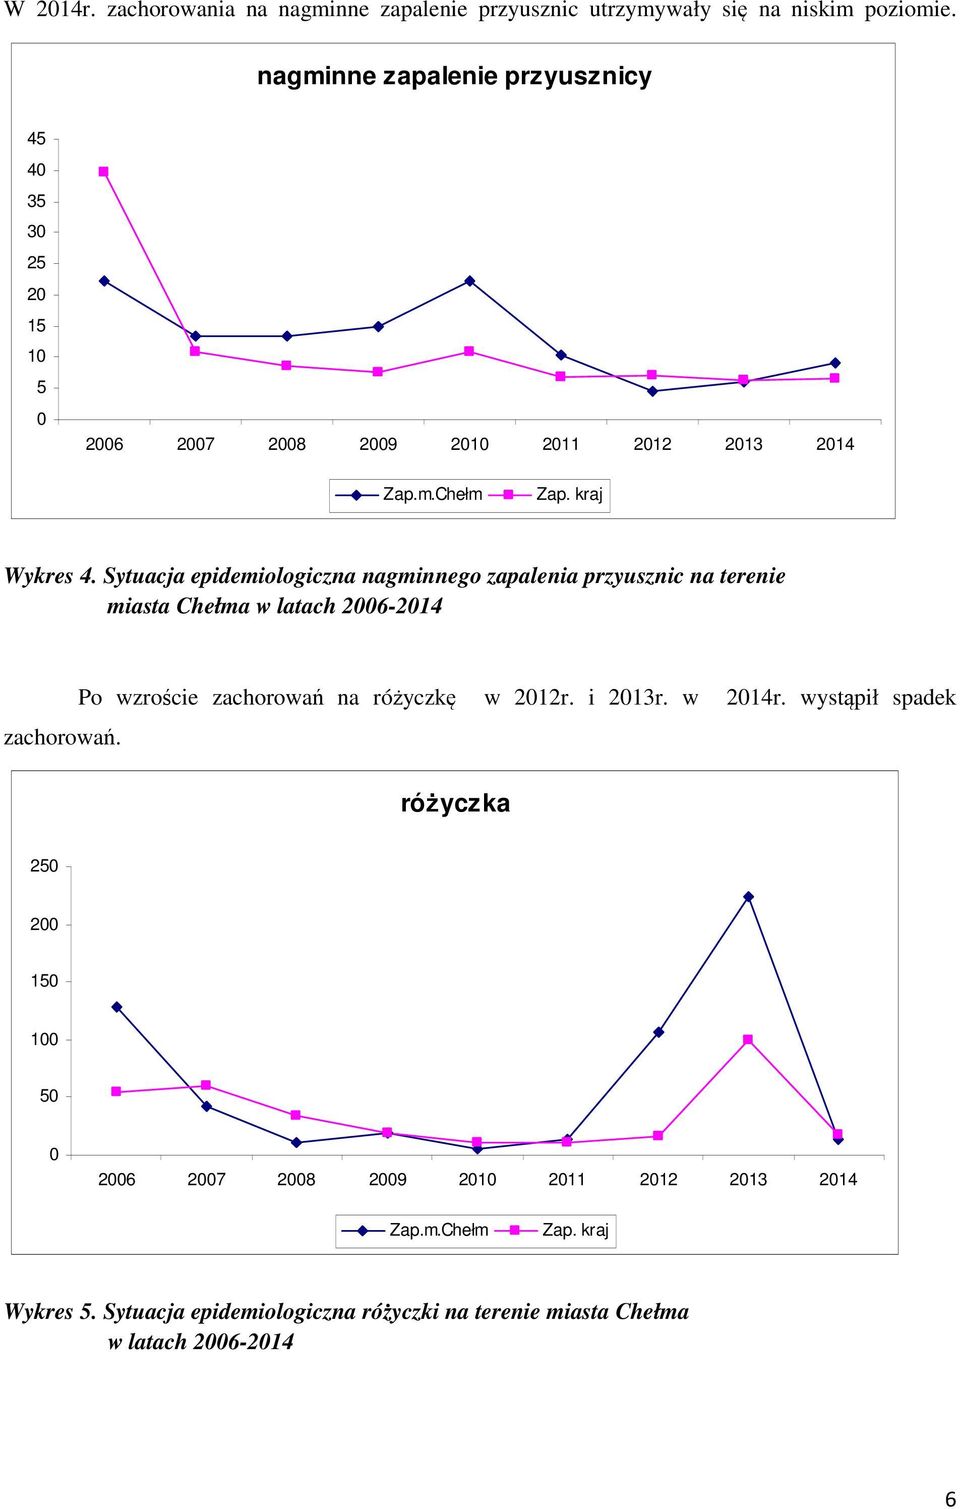 Sytuacja epidemiologiczna nagminnego zapalenia przyusznic na terenie miasta Chełma w latach 2006-2014 zachorowań.